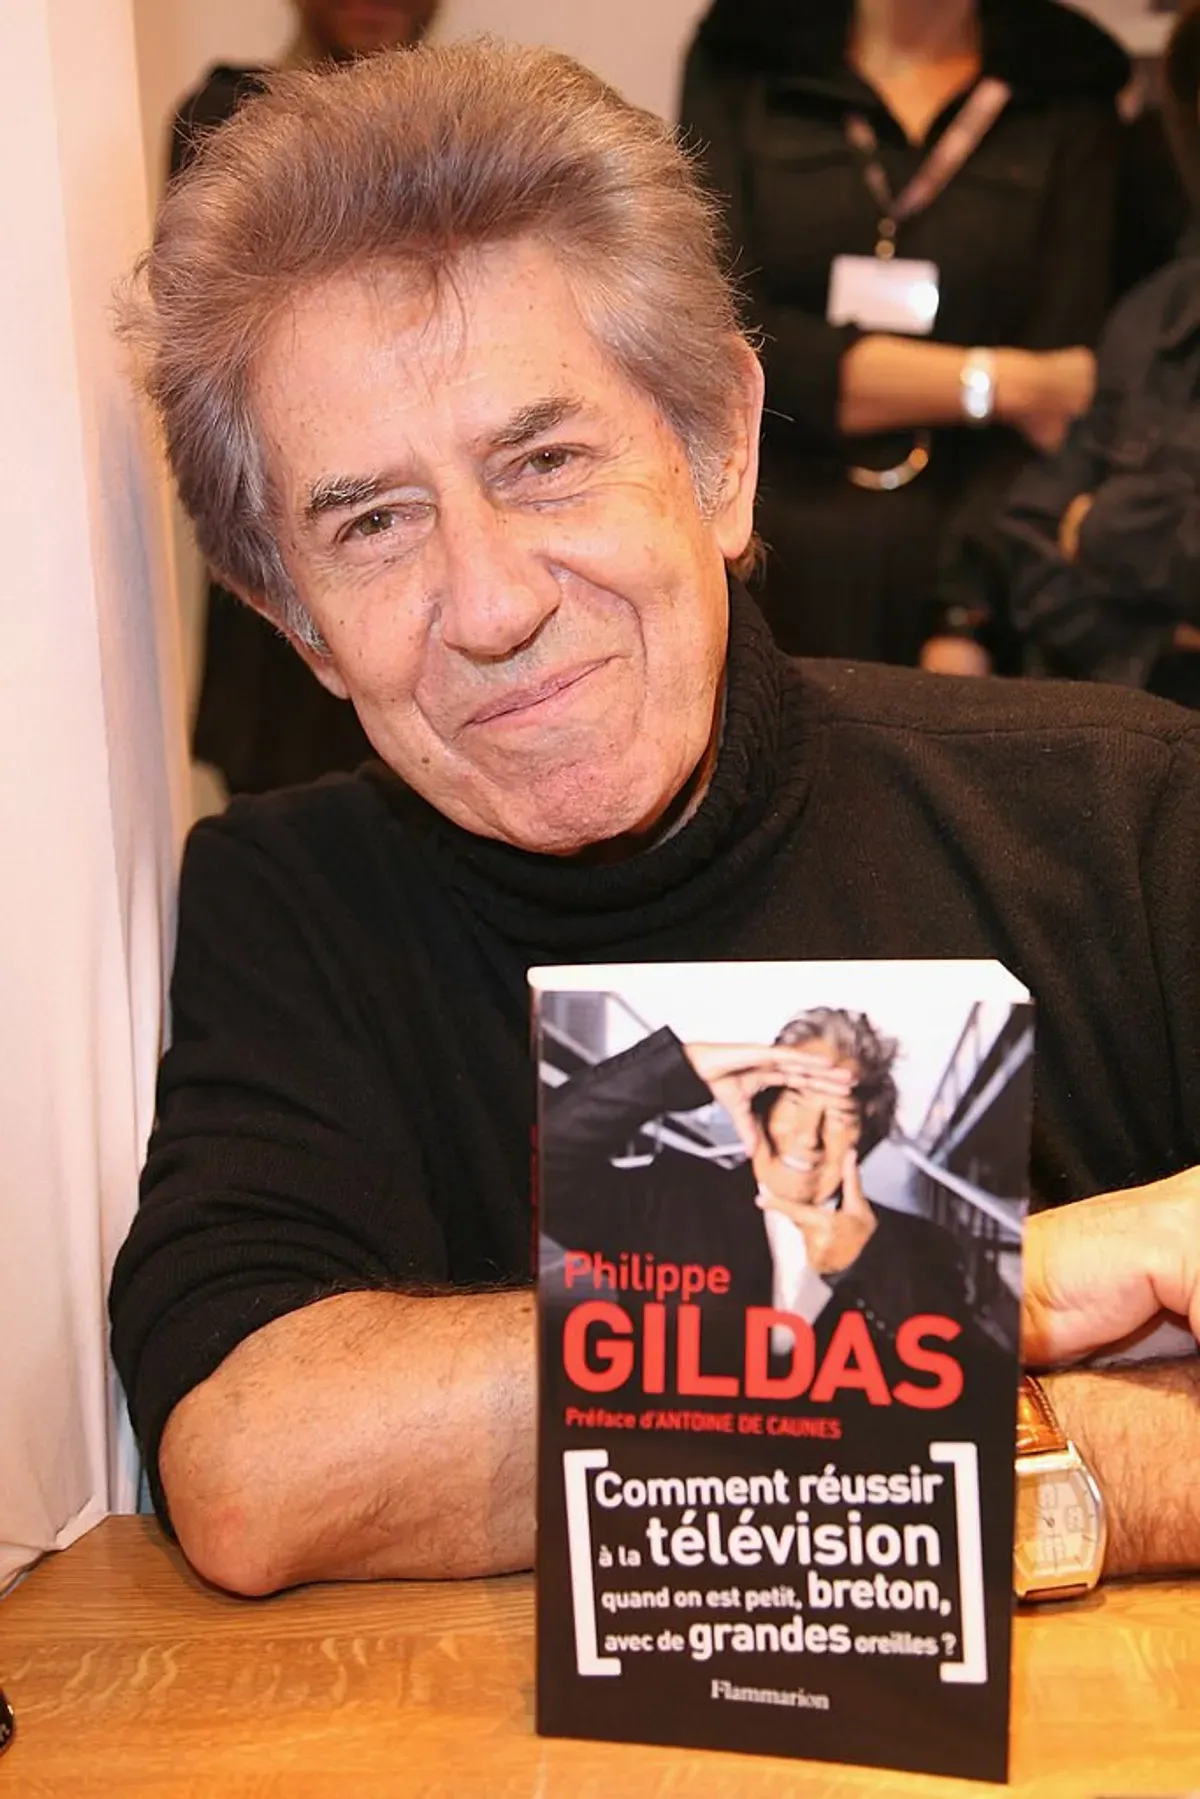 Philippe Gildas signe des exemplaires de son livre au 30e salon du livre de la Porte de Versailles le 27 mars 2010 à Paris, France. | Photo : Getty Images